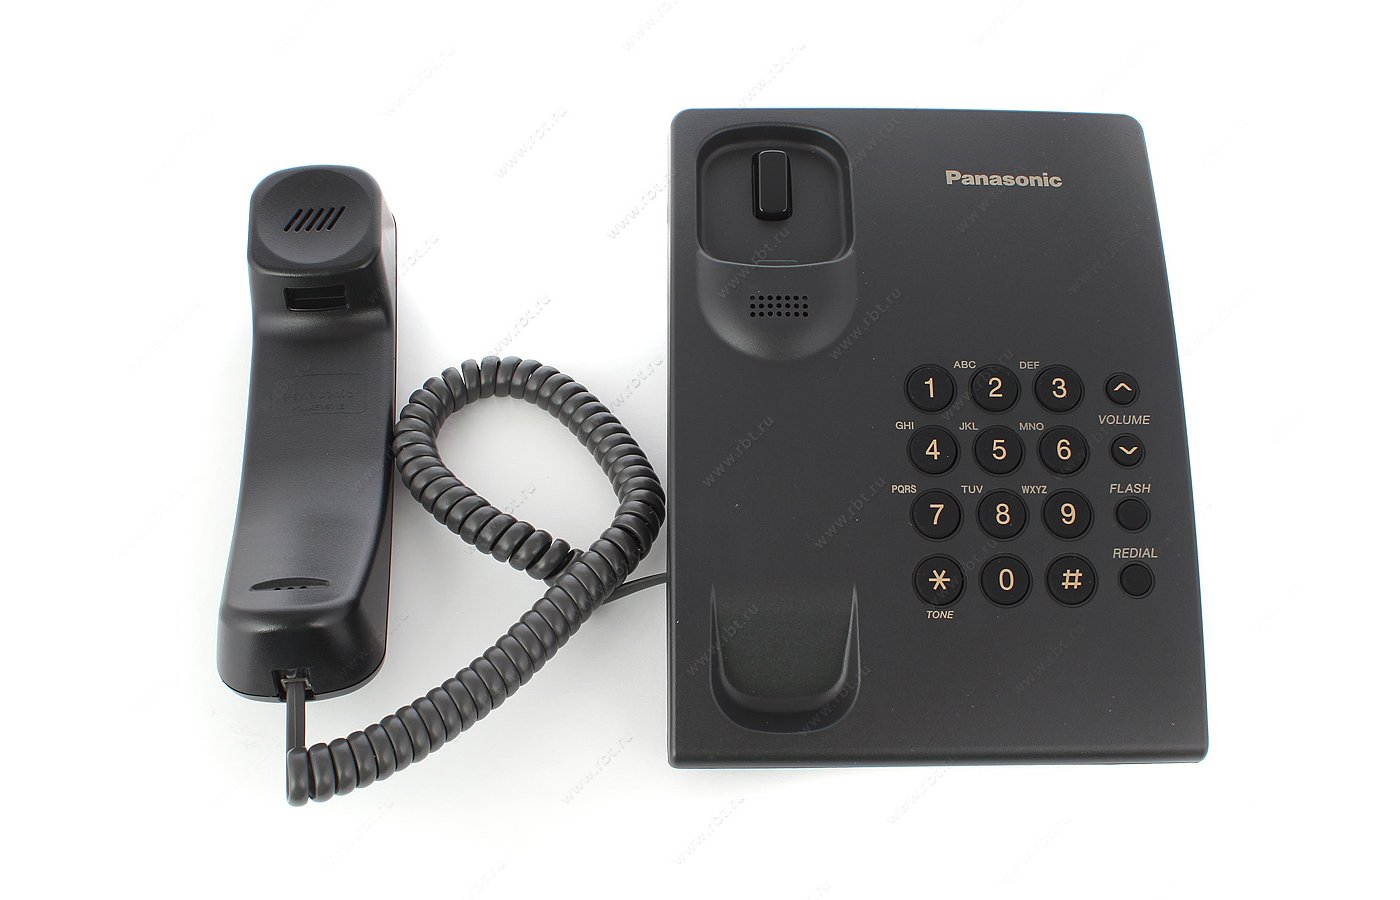 Panasonic kx ts2350. Panasonic KX-ts2350 RUB. Телефон Panasonic KX-ts2350rub. KX-ts2350 ( KX TS 2350 ). Panasonic KX-ts2350 t.